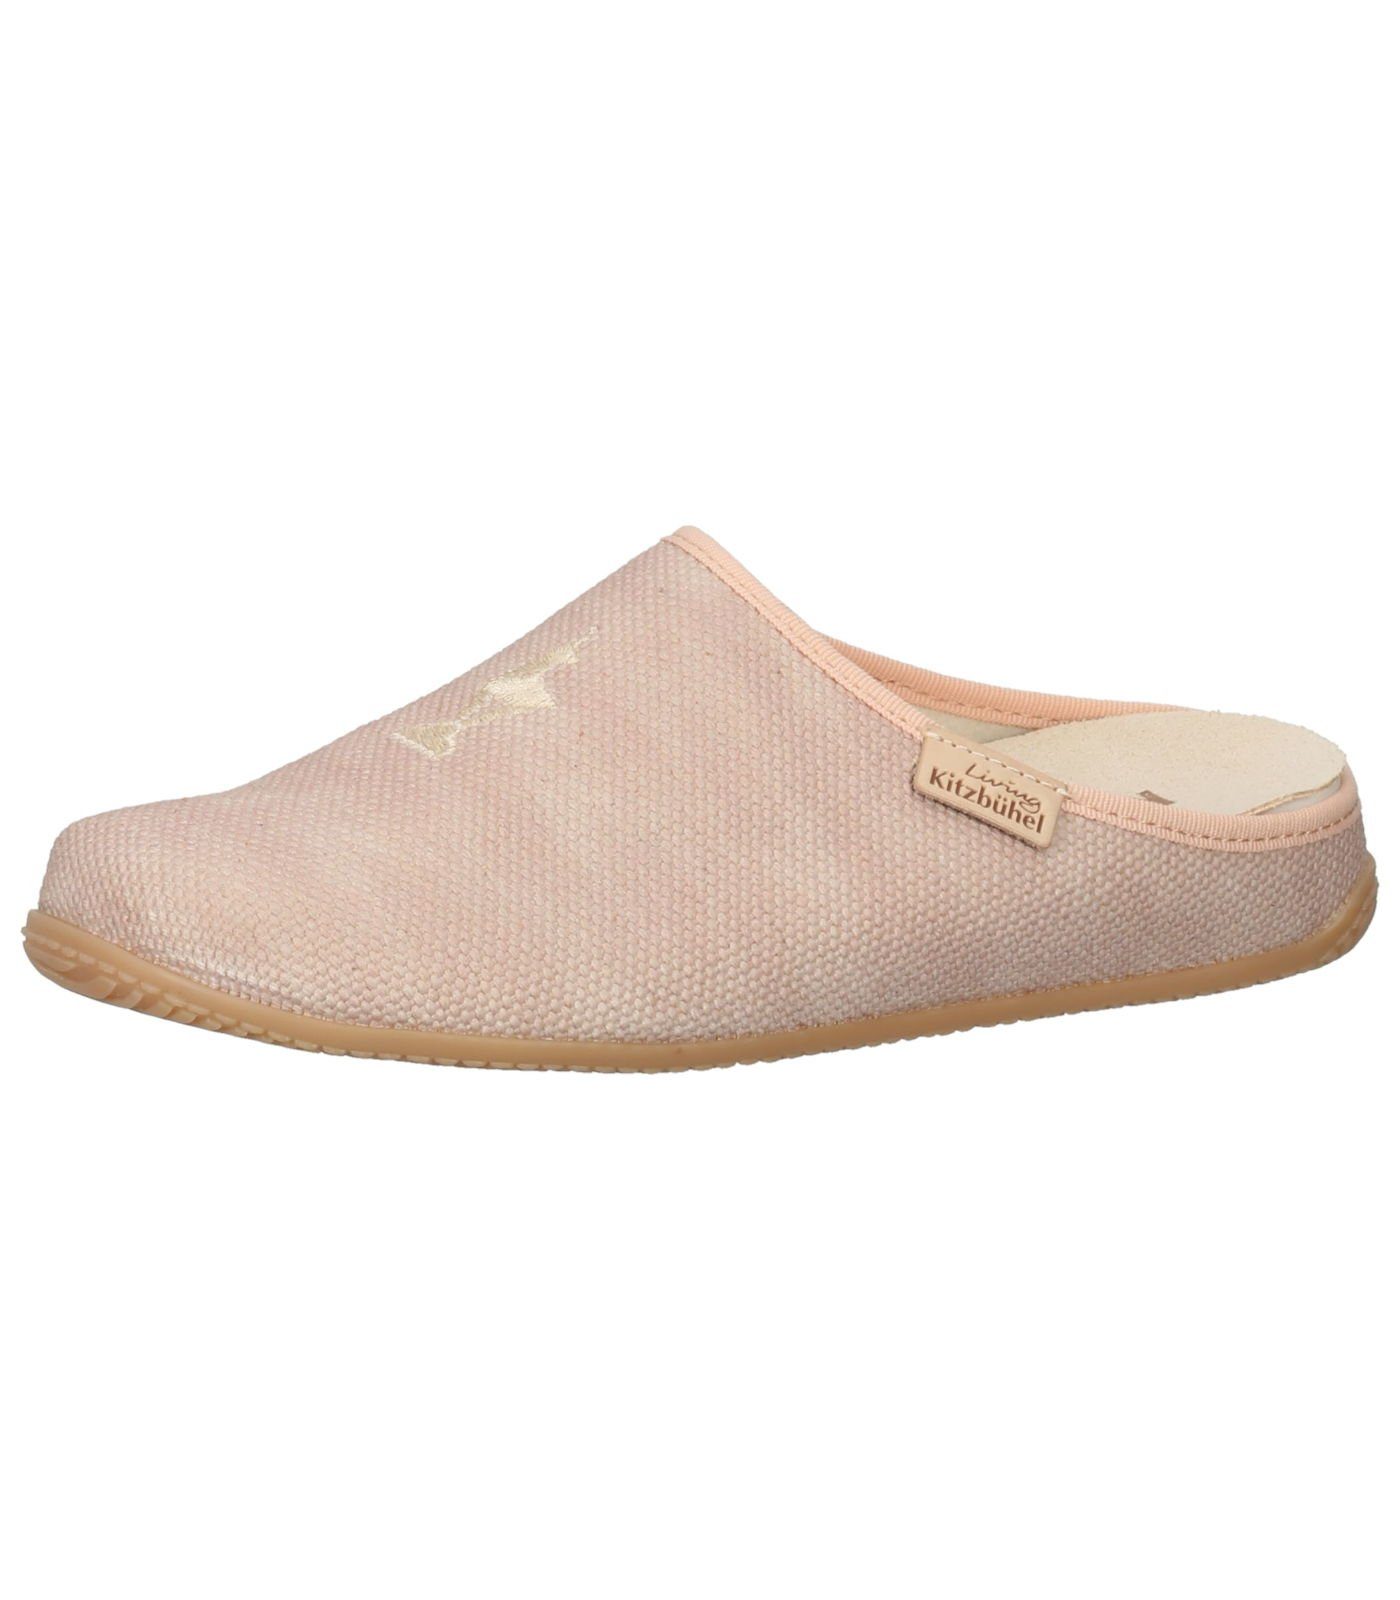 Rosa Herren-Schuhe online kaufen » Pinke Schuhe Herren-| OTTO